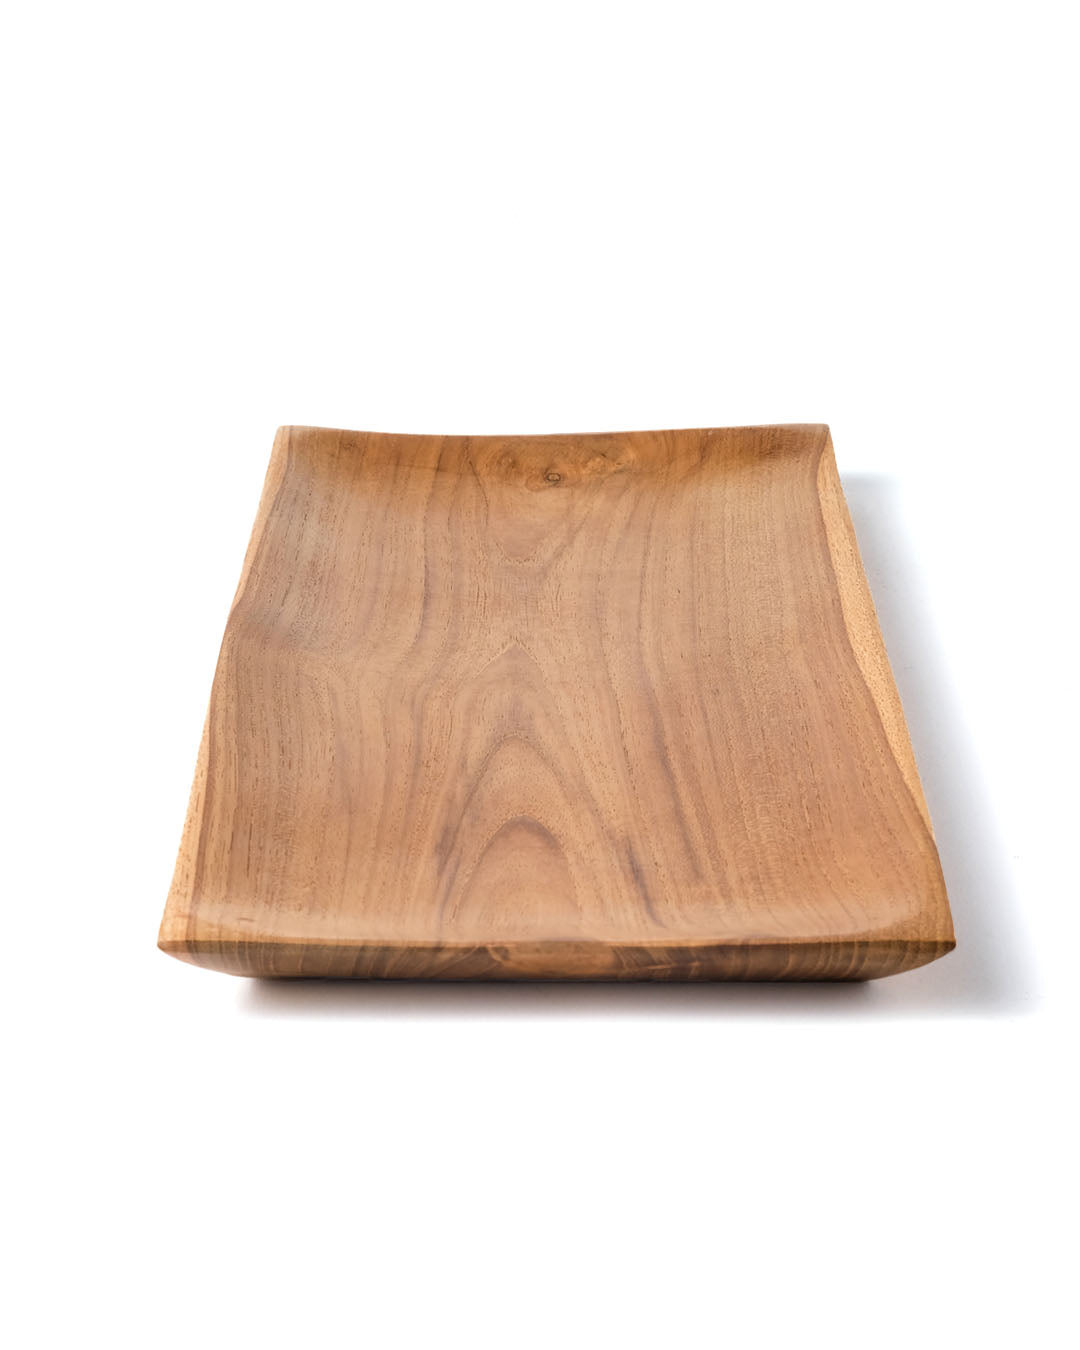 Plato de madera de teca Depok R, hecho en Indonesia por artesano, altura 2 cm largo 35 cm profundidad 17 cm